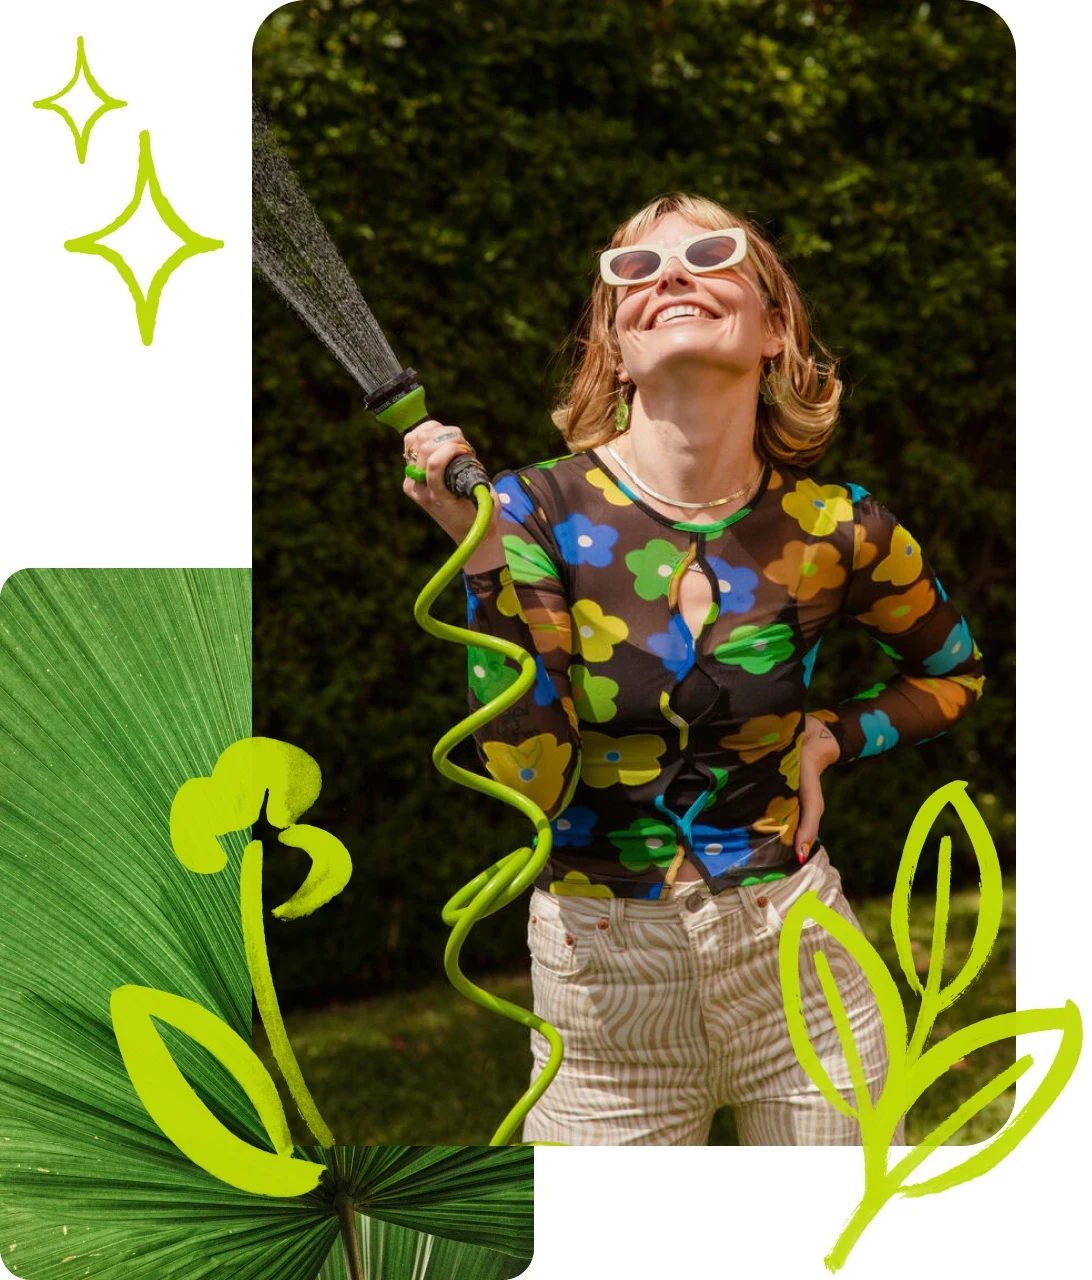 Pin-Collage einer lächelnden Frau mit Sonnenbrille und buntem Oberteil; sie hält einen Gartenschlauch